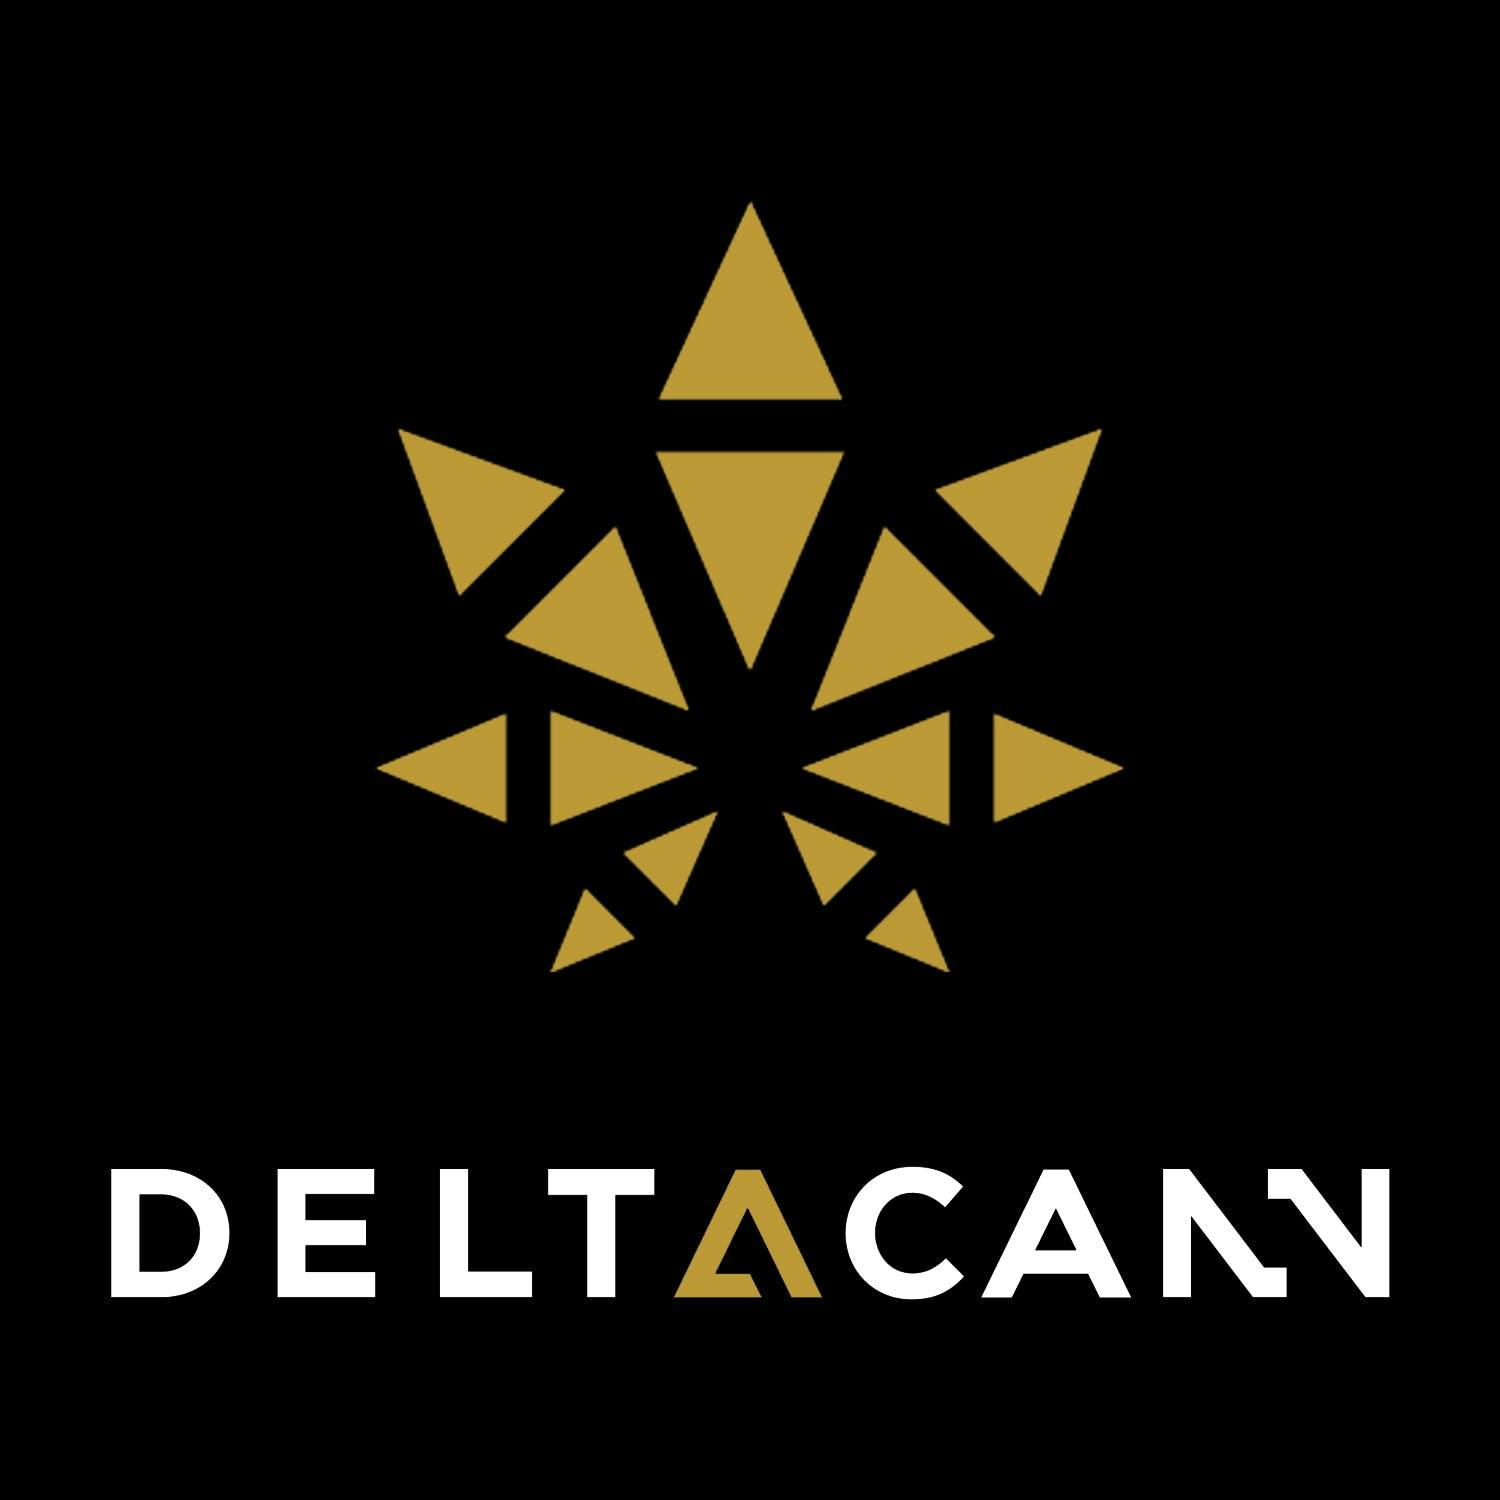 DeltaCann